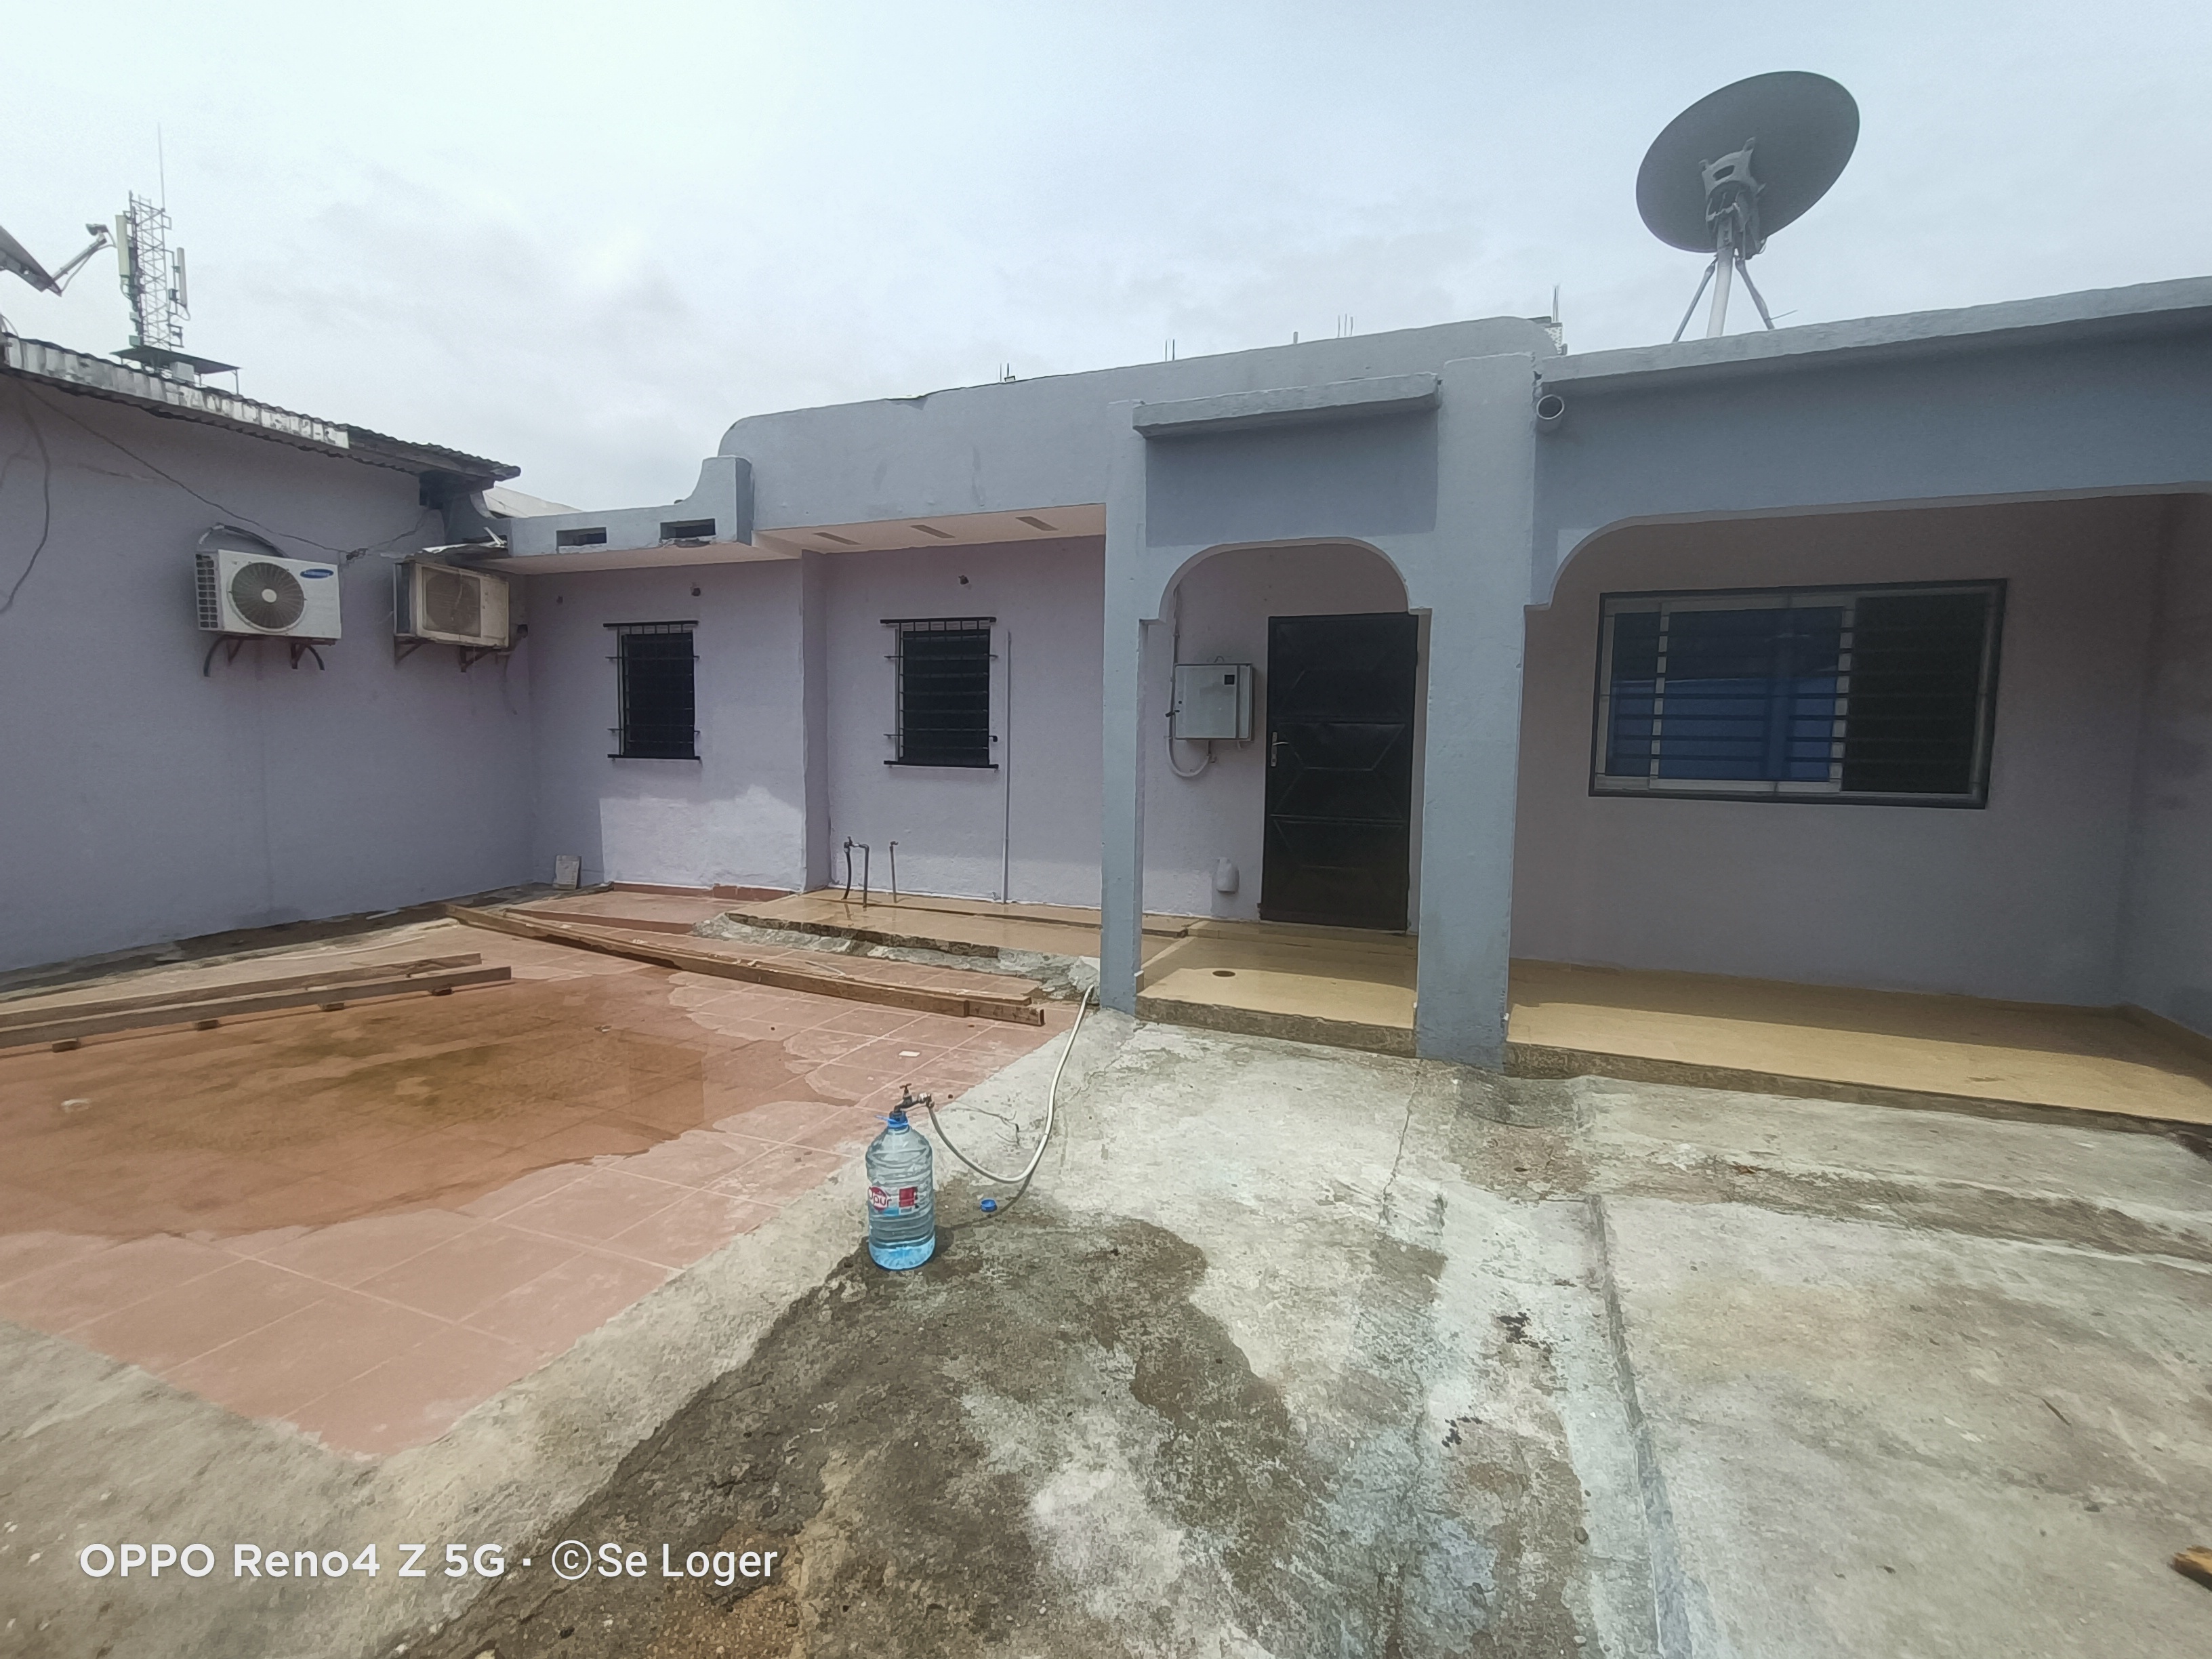 Maison (Villa) à louer - Douala, Makepe, H - 1 salon(s), 3 chambre(s), 2 salle(s) de bains - 3 000 000 FCFA / mois